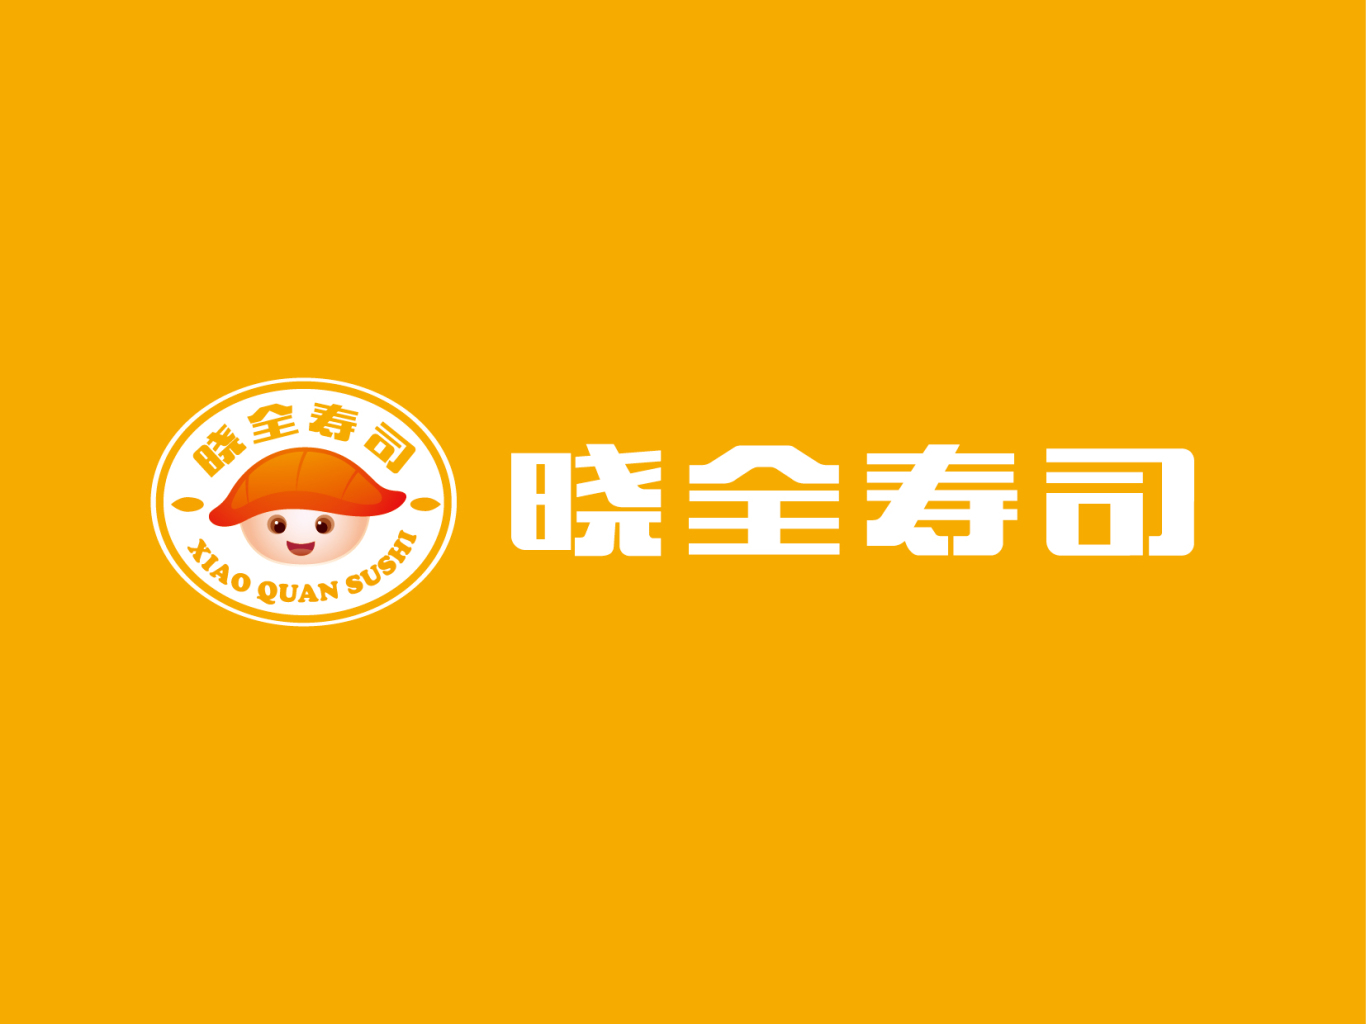 曉全壽司logo升級圖7